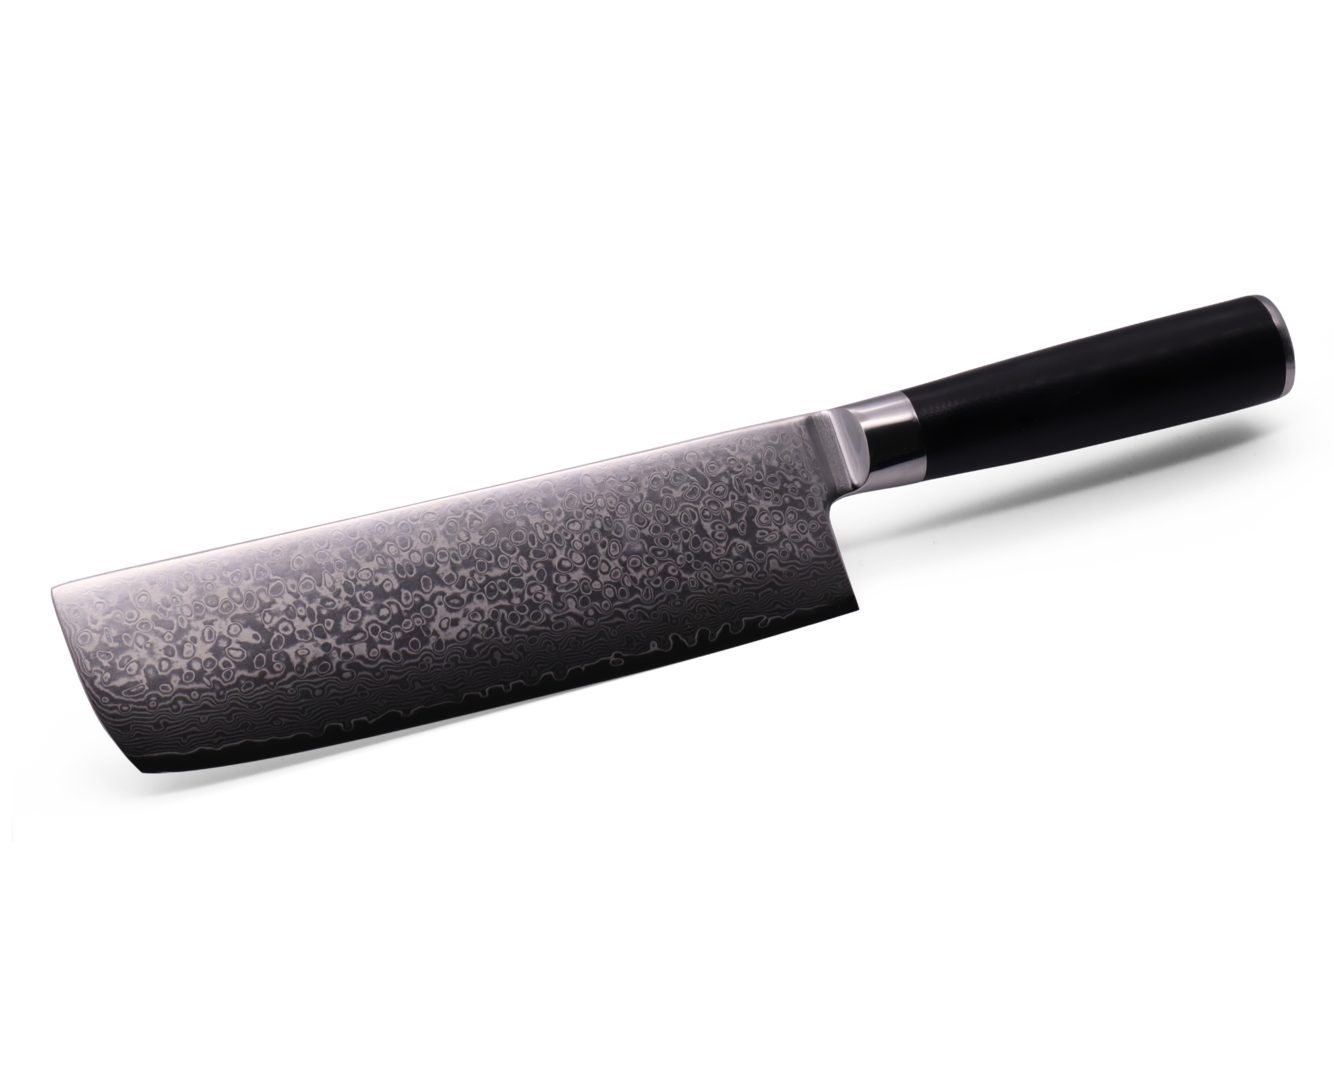 Damaszenerstahl (japanischer Geschmiedet Stahlkern) 17,8cm, – Franz aus VG-10 Gemüsemesser Messer Gemüsemesser Lagen 67 echtem